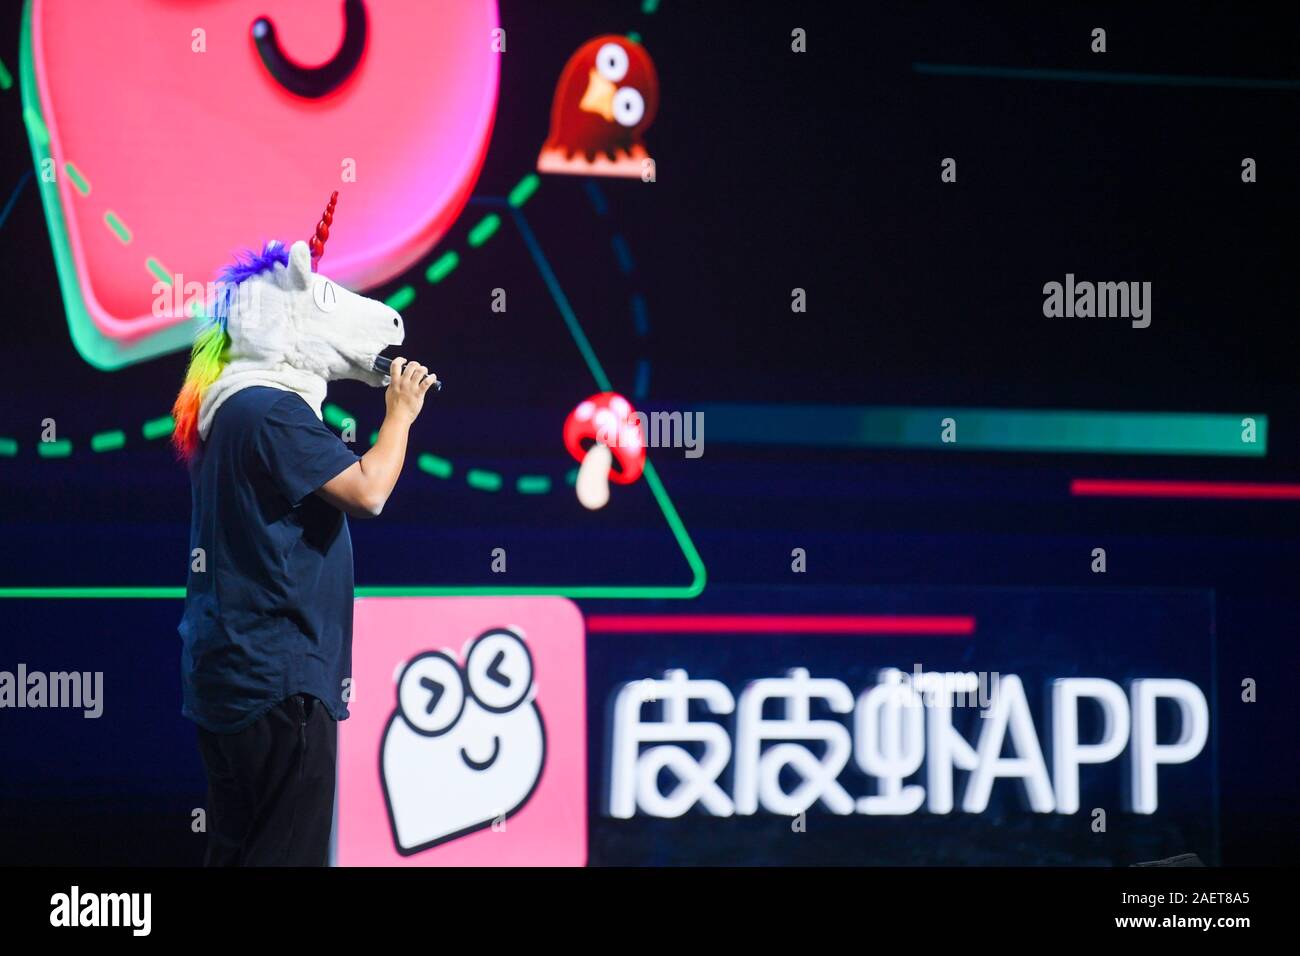 Chinesische Youtuber Einhorn zeigen, wer Kleider ein Einhorn  Kopfbedeckungen shooting Videos in Amerikanischen Straßen und verdient  Millionen von Zuschauern in China, liefert s Stockfotografie - Alamy